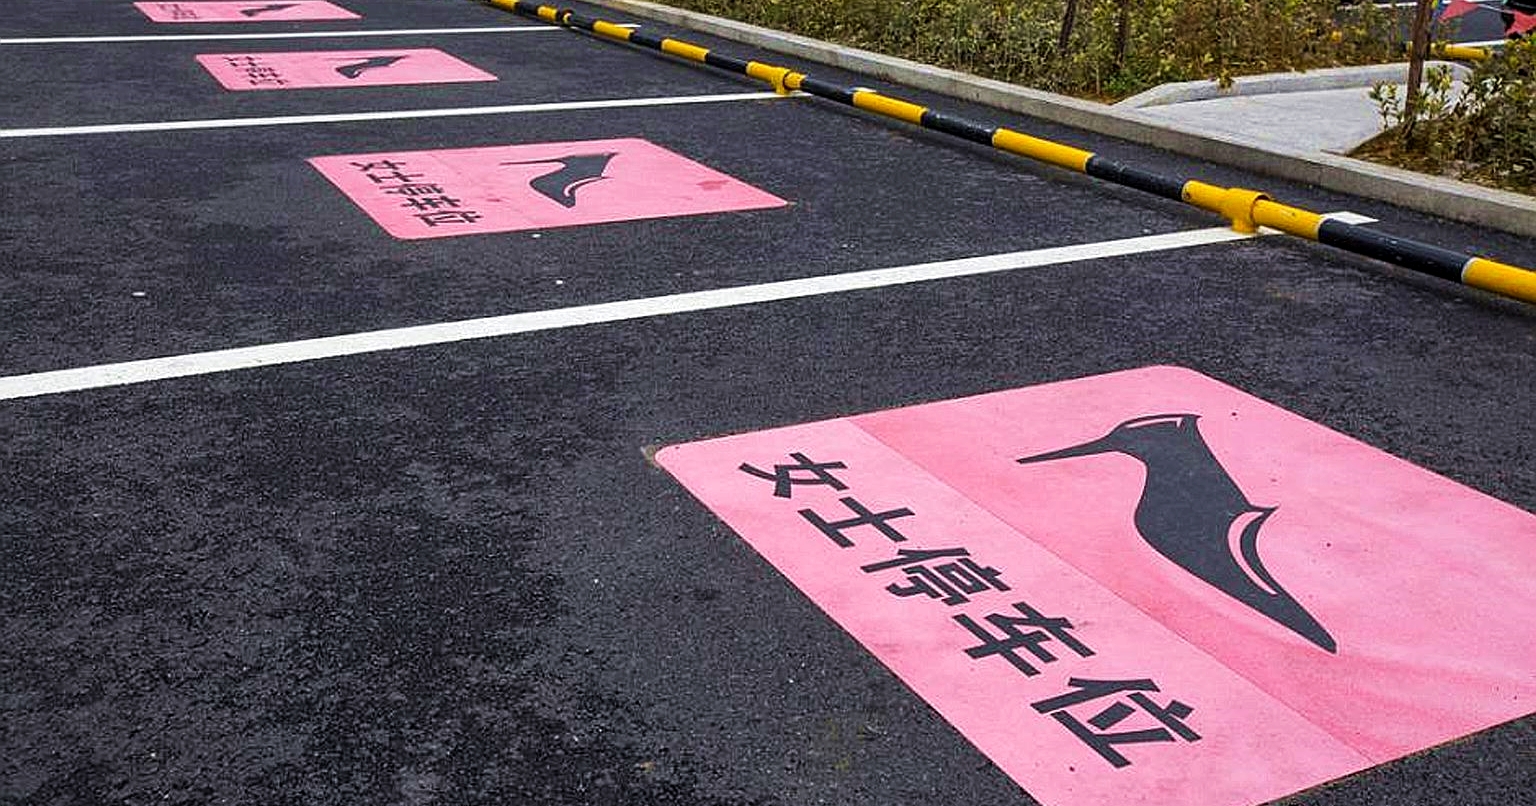 Ķīnā ievieš īpašas parkošanās vietas sievietēm. Gribēja kā labāk, bet izprovocēja feministes.